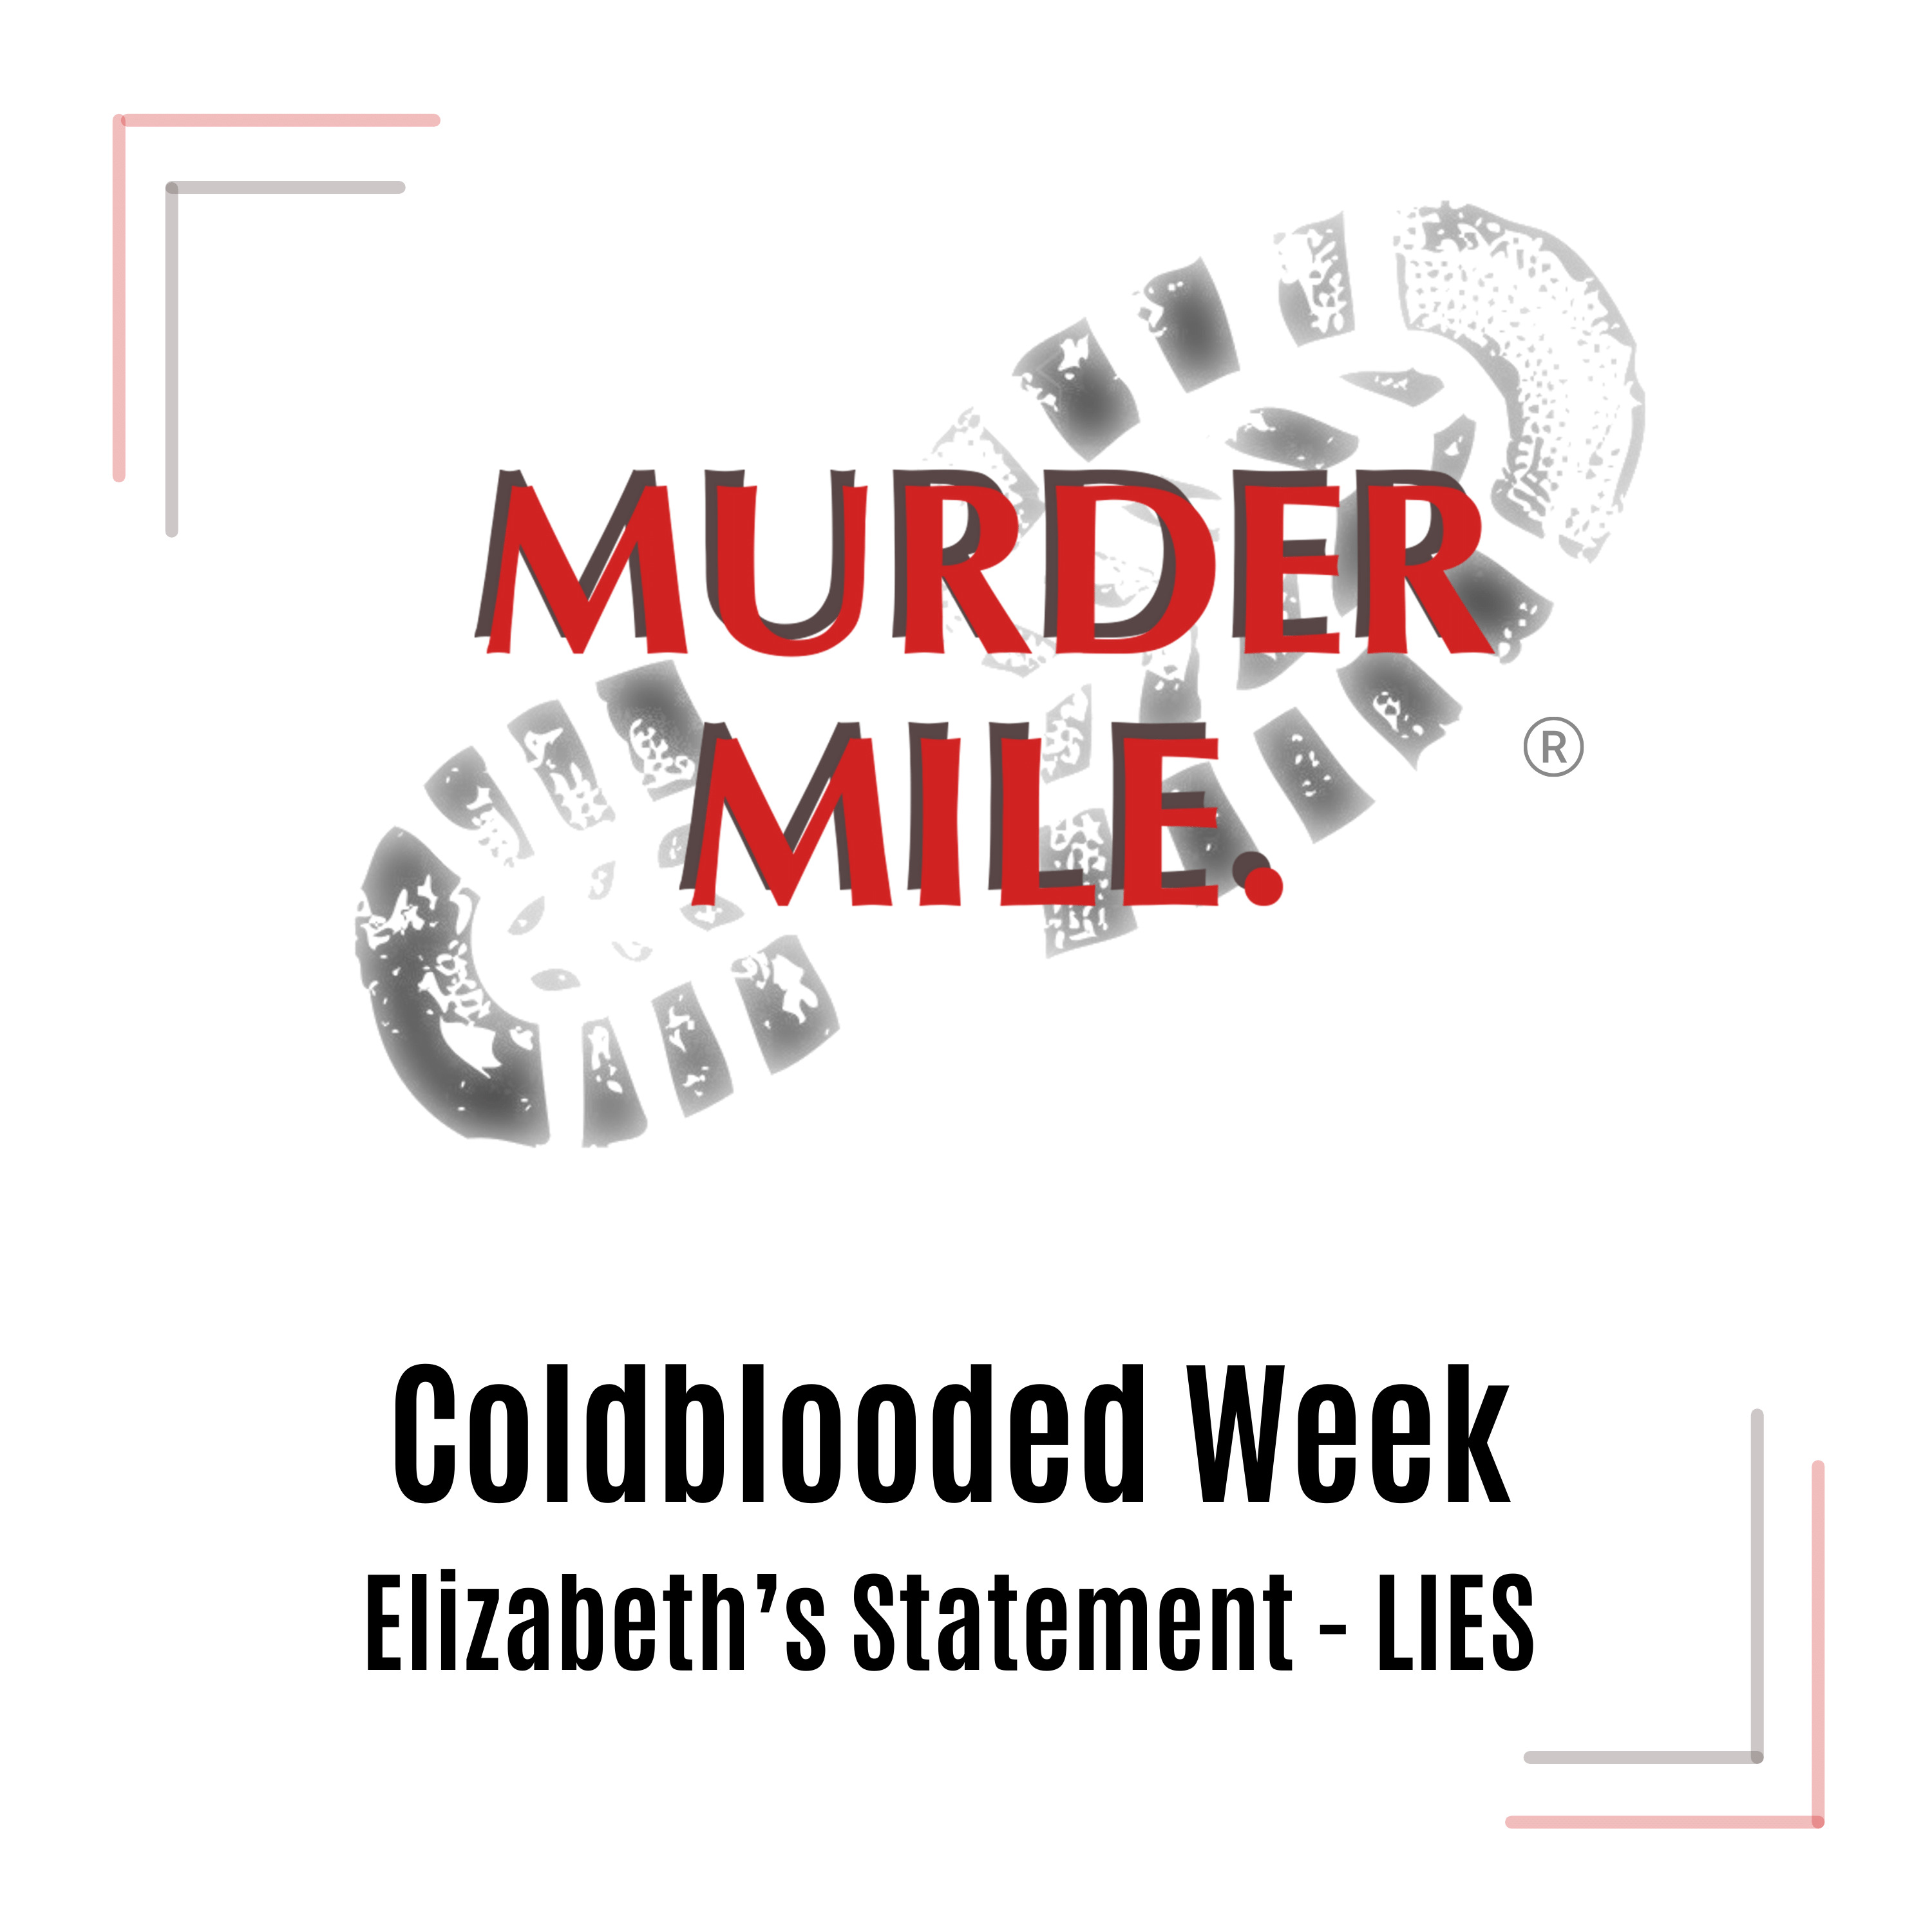 Coldblooded Week - Elizabeth’s First Statement - LIES